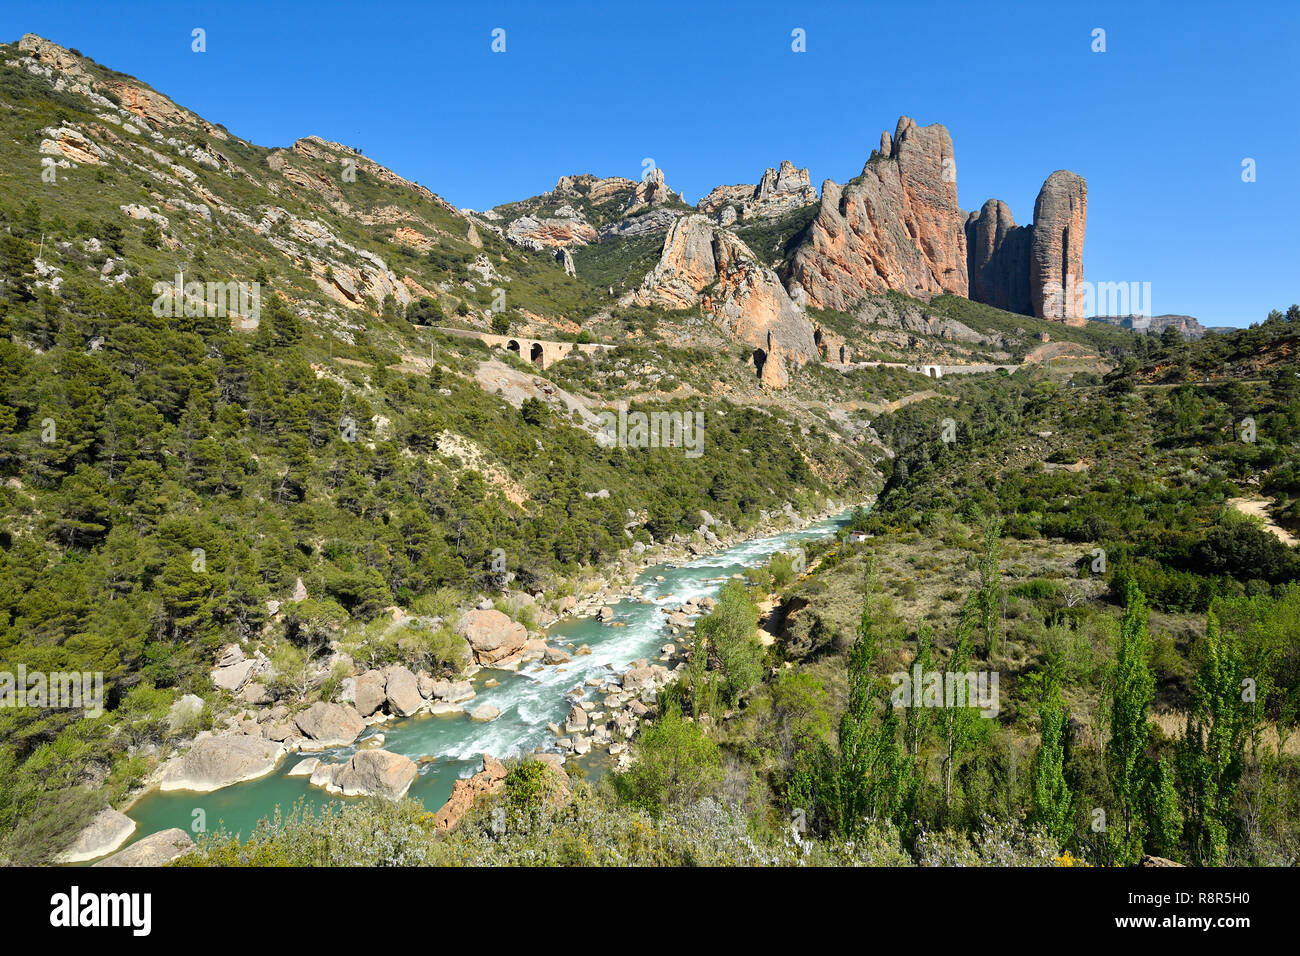 Spain, Hoya de Huesca, Rio Gallego Valley, Los Mallos, Gallego river and Mallos of Riglos Stock Photo